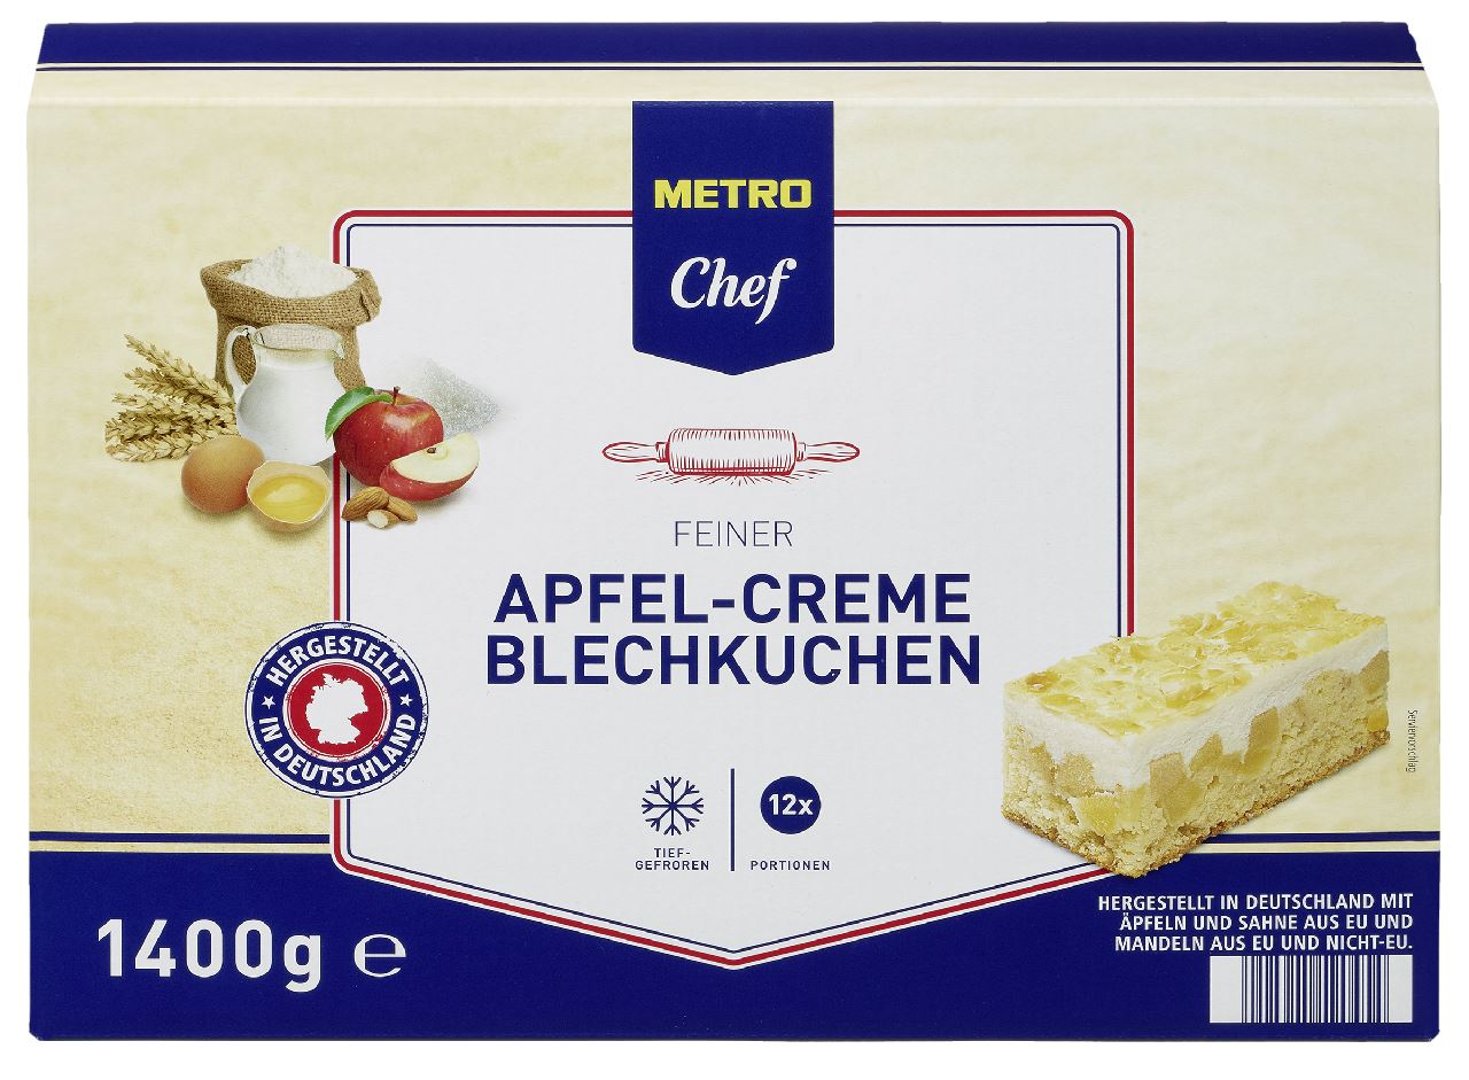 METRO Chef - Feiner Apfel-Creme Schnitte Blechkuchen, tiefgefroren 12 Portionen - 1,4 kg Packung